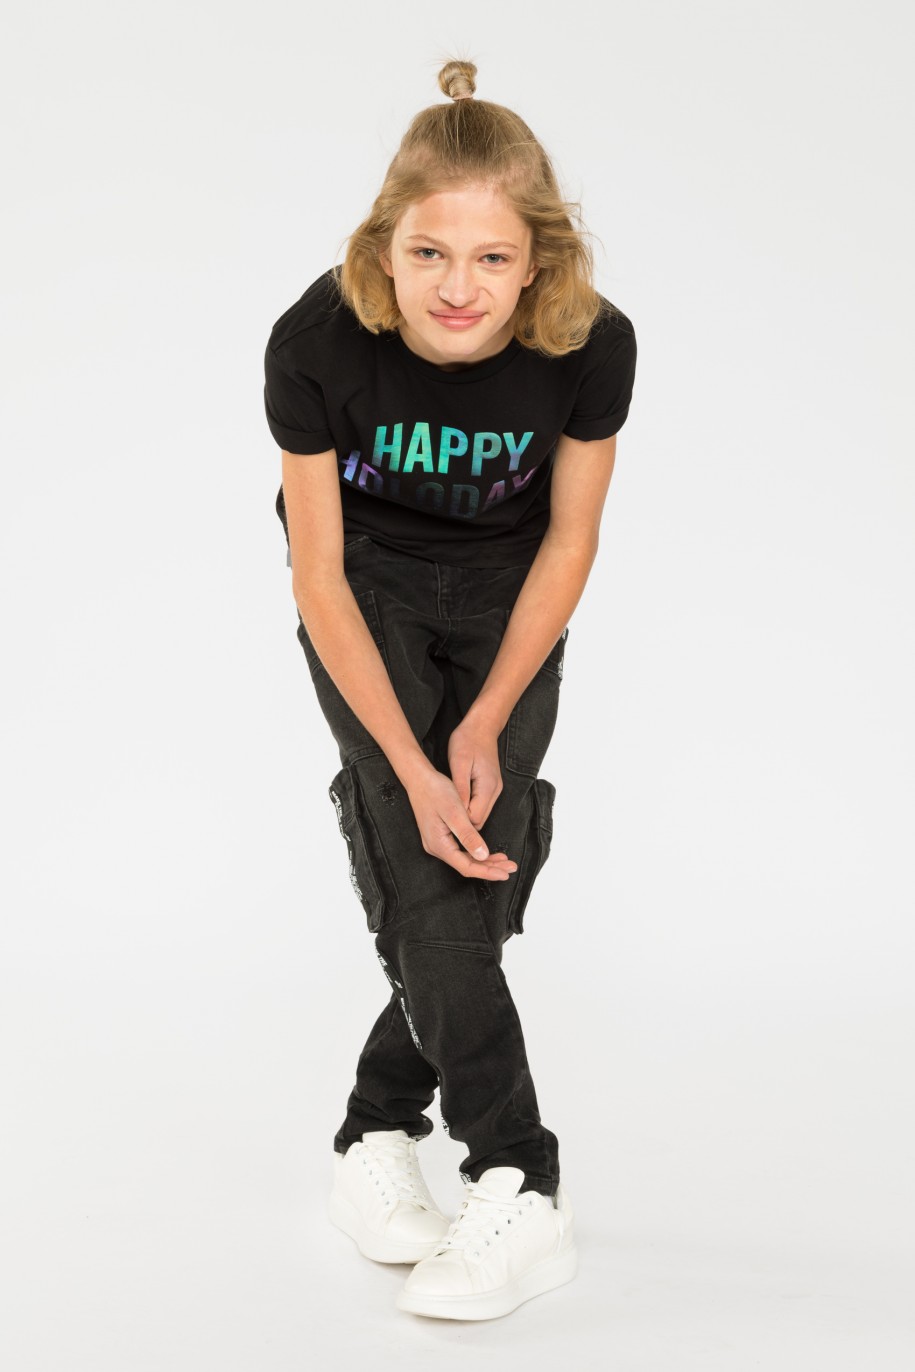 Czarny t-shirt dla chłopaka HAPPY HOLODAYS - 31179